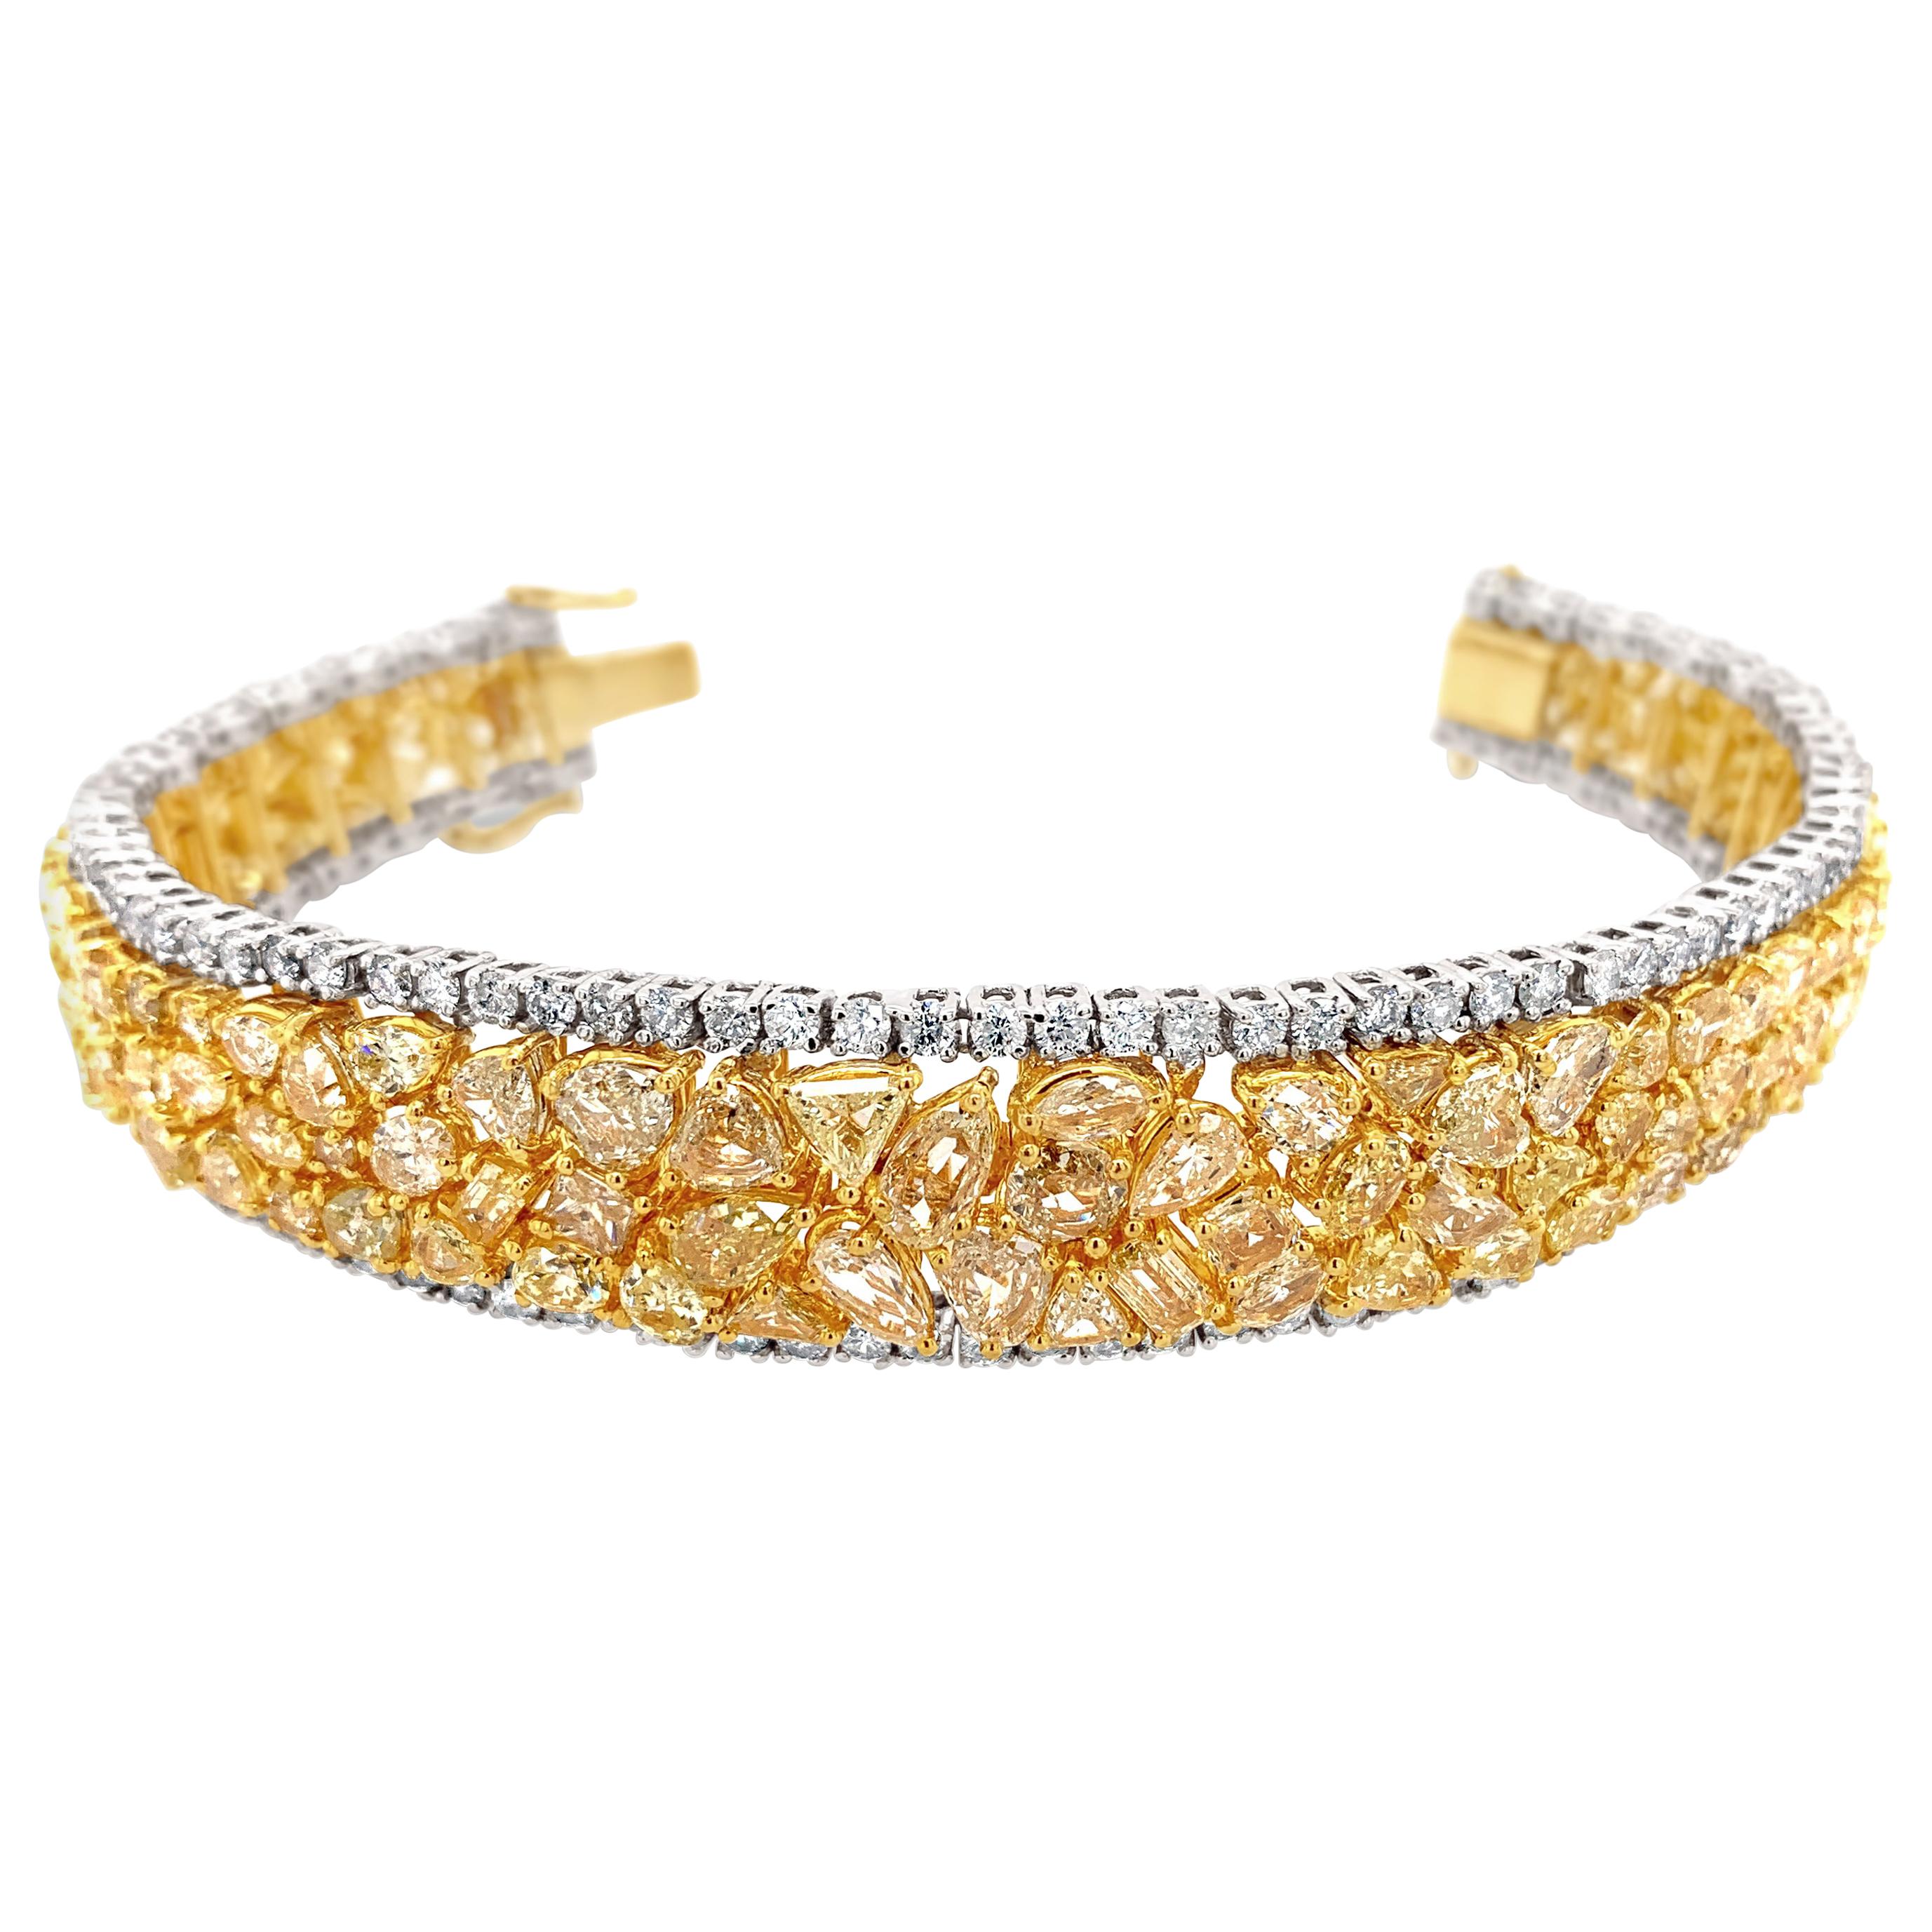 30.0 Carat 'Total Weight' 18 Karat Yellow and White Gold Diamond Bracelet